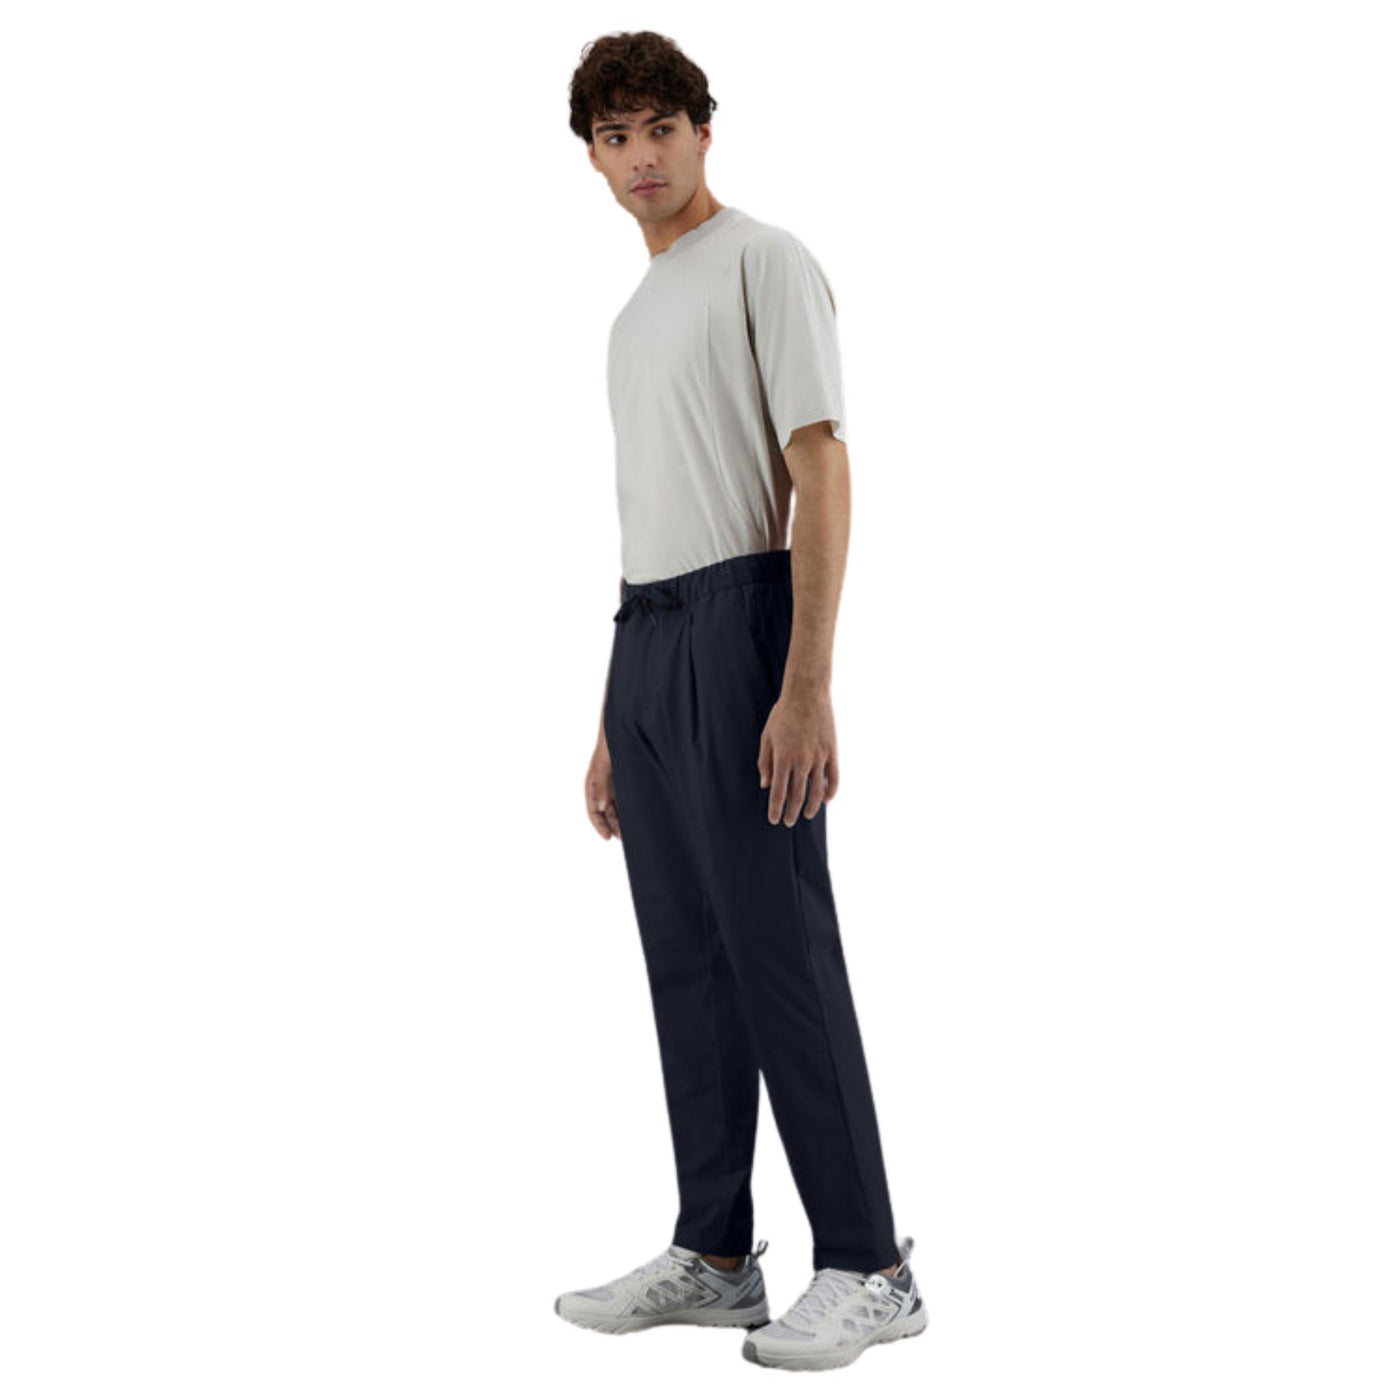 Modello con Pantalone con inserto elastico regolabile in vita